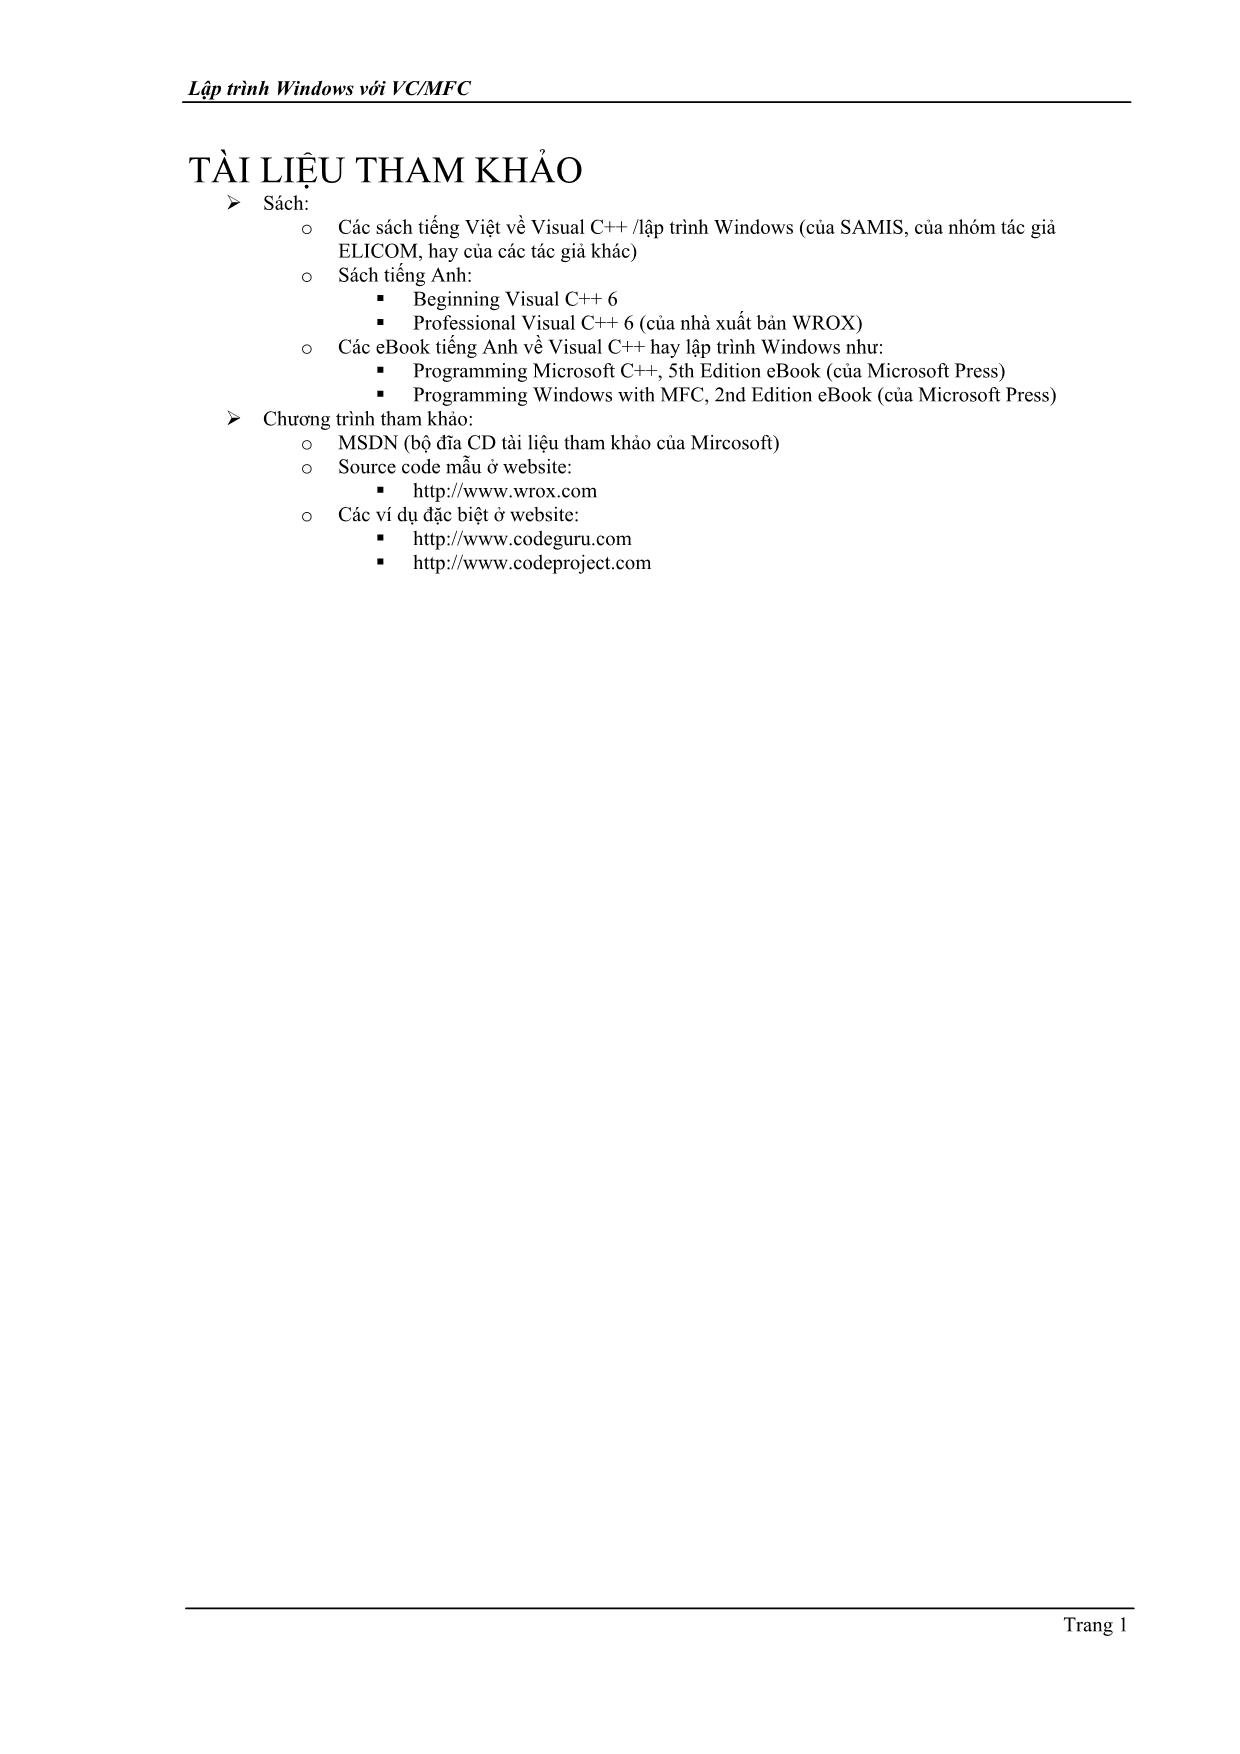 Giáo trình Lập trình Windows với VC/MFC trang 2